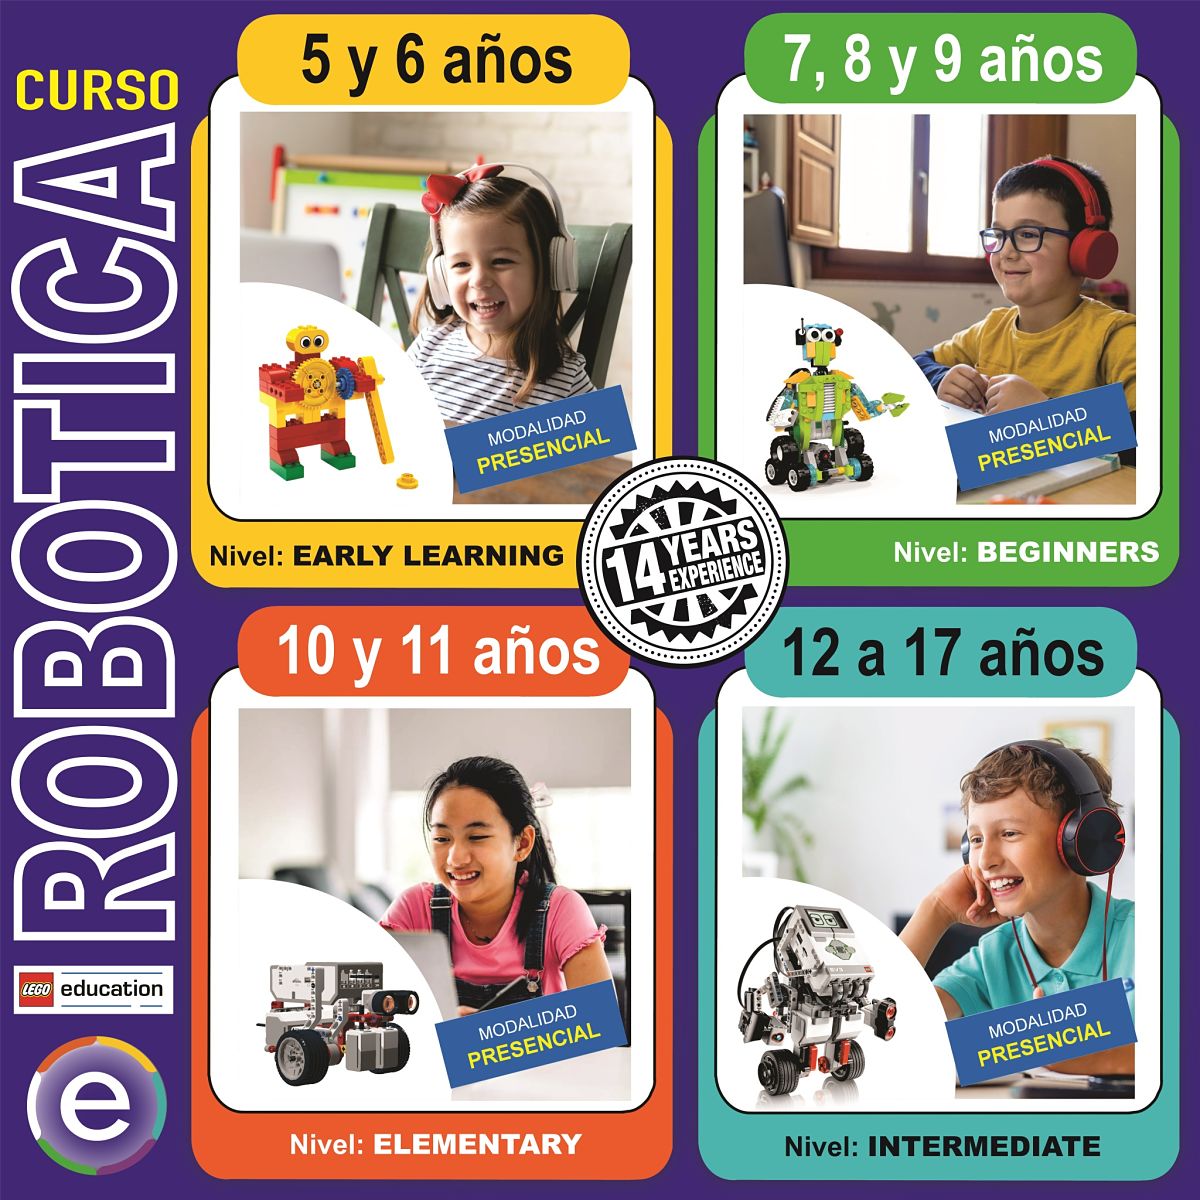 Curso Taller Clases de robótica educativa Lego para niños modalidad presencial en Arequipa, Perú